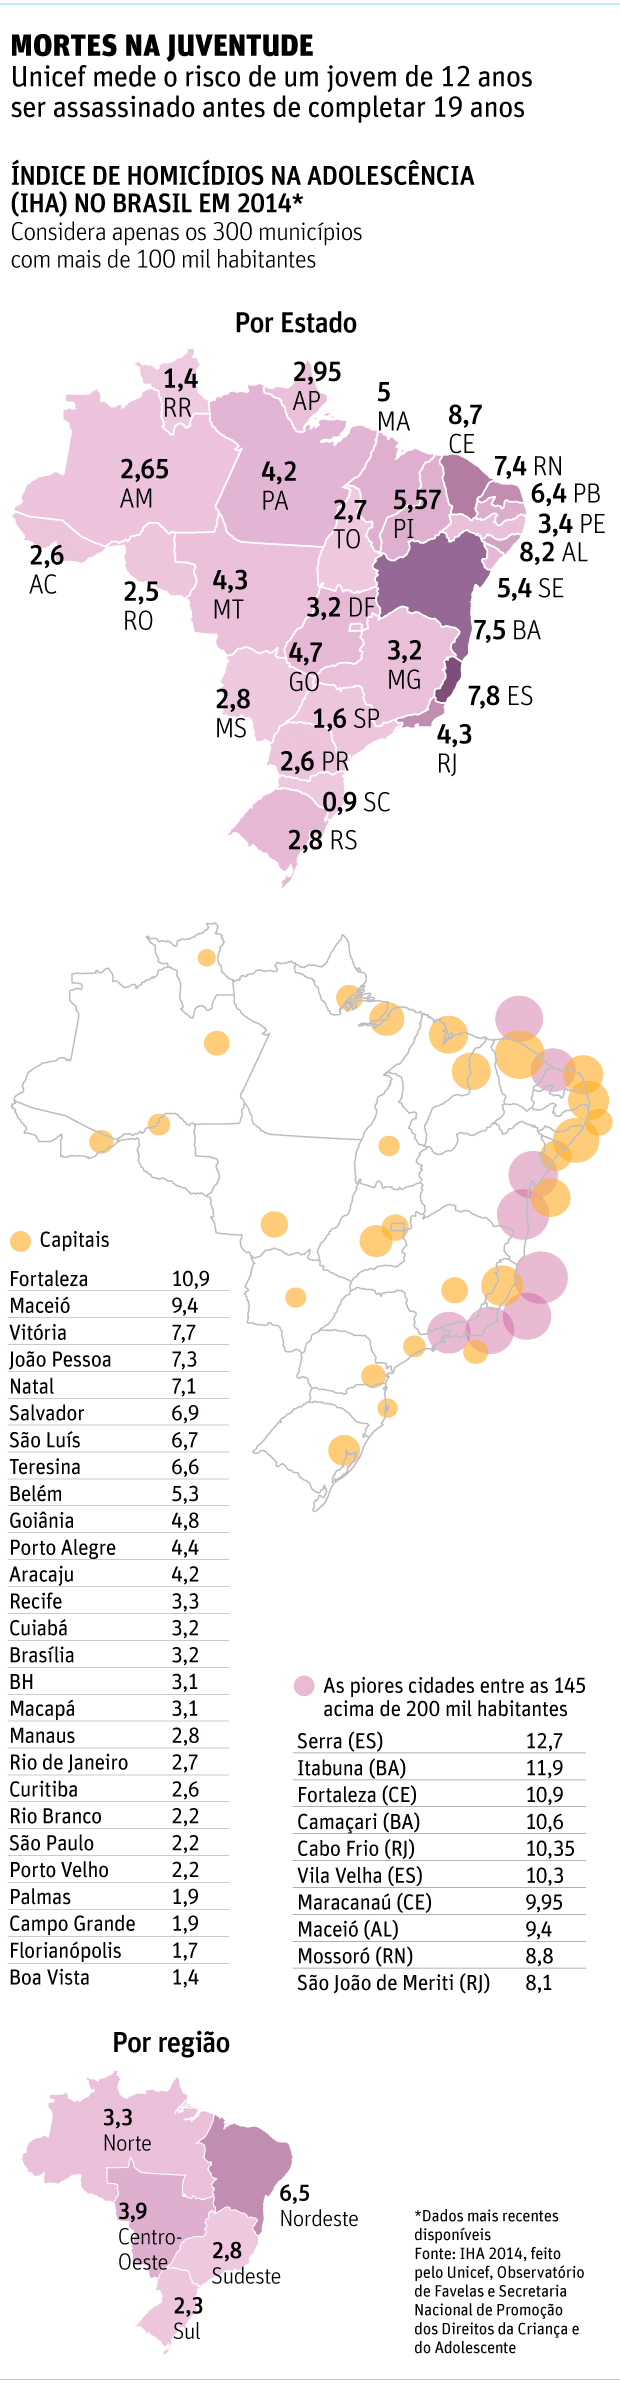 ÍNDICE DE HOMICÍDIOS NA ADOLESCÊNCIA (IHA) NO BRASIL EM 2014*